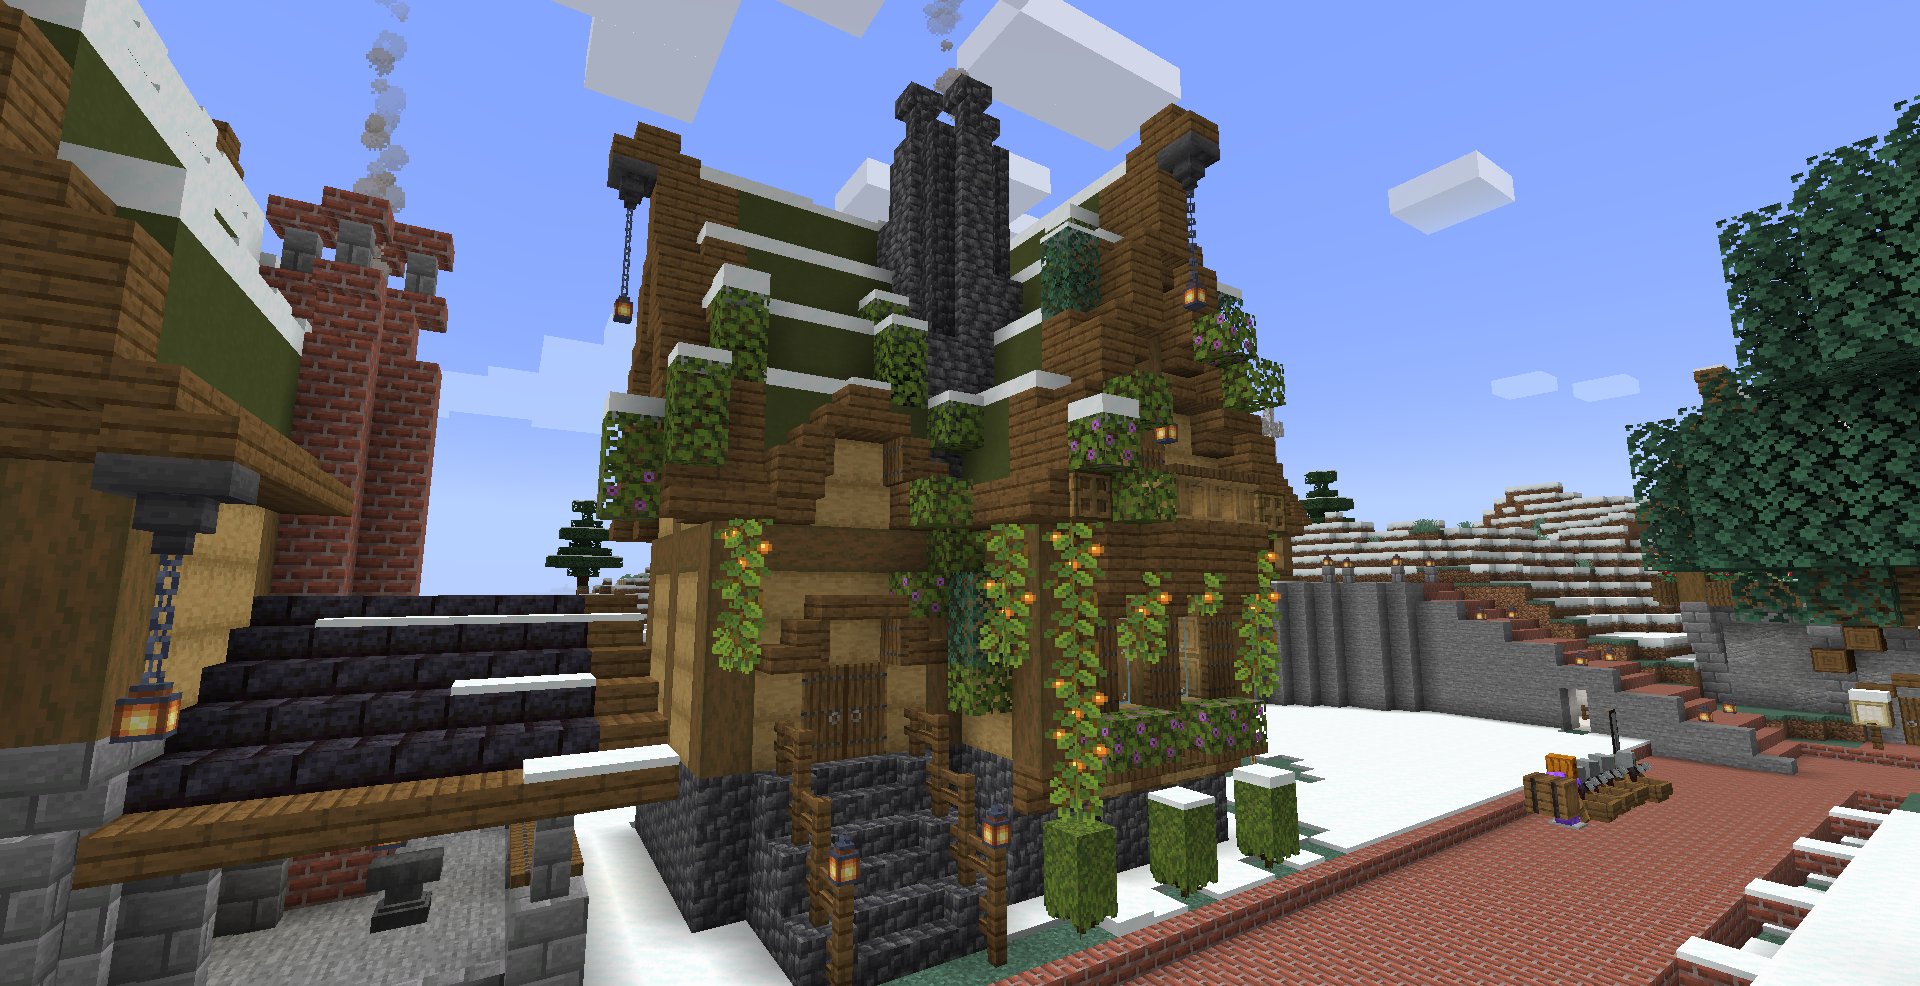 むゆみ 石工さんの家を建てました 1 17の新要素多めの建築をしてみました 深層岩が煙突と合います O ツツジと苔ブロックで作れる低木可愛くておしゃれです マイクラ Minecraft Minecraft建築コミュ サバイバル建築クラブ T Co